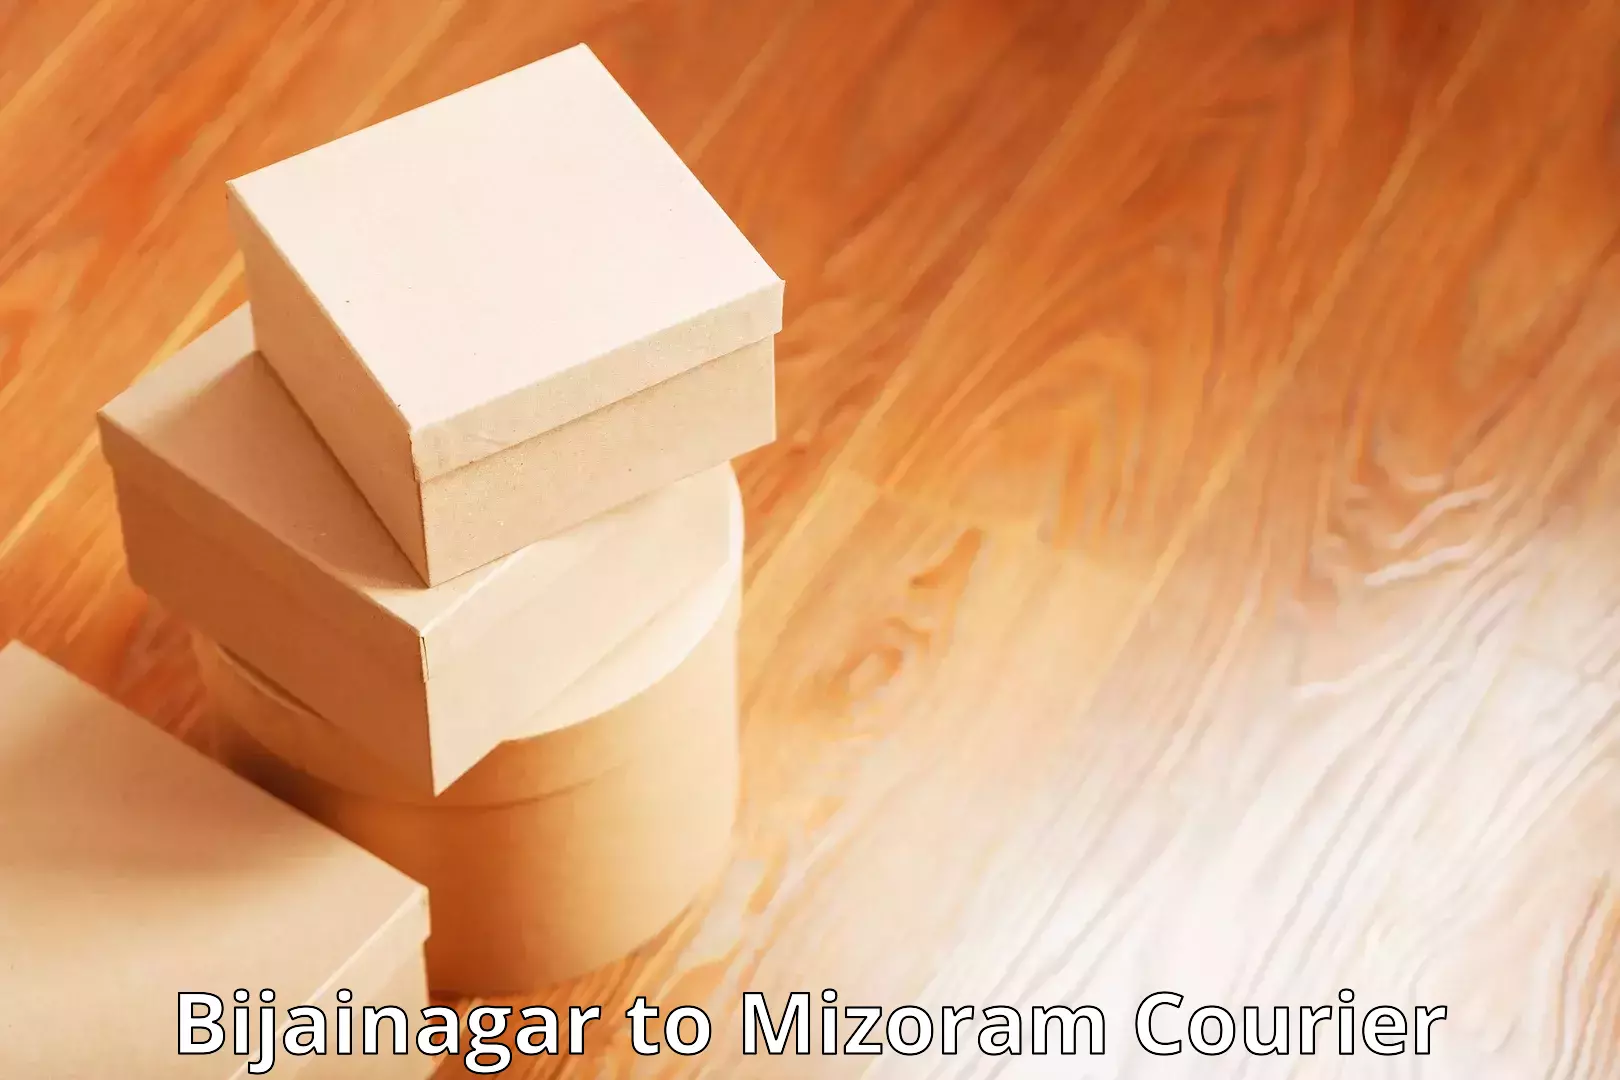 Local courier options Bijainagar to Mizoram